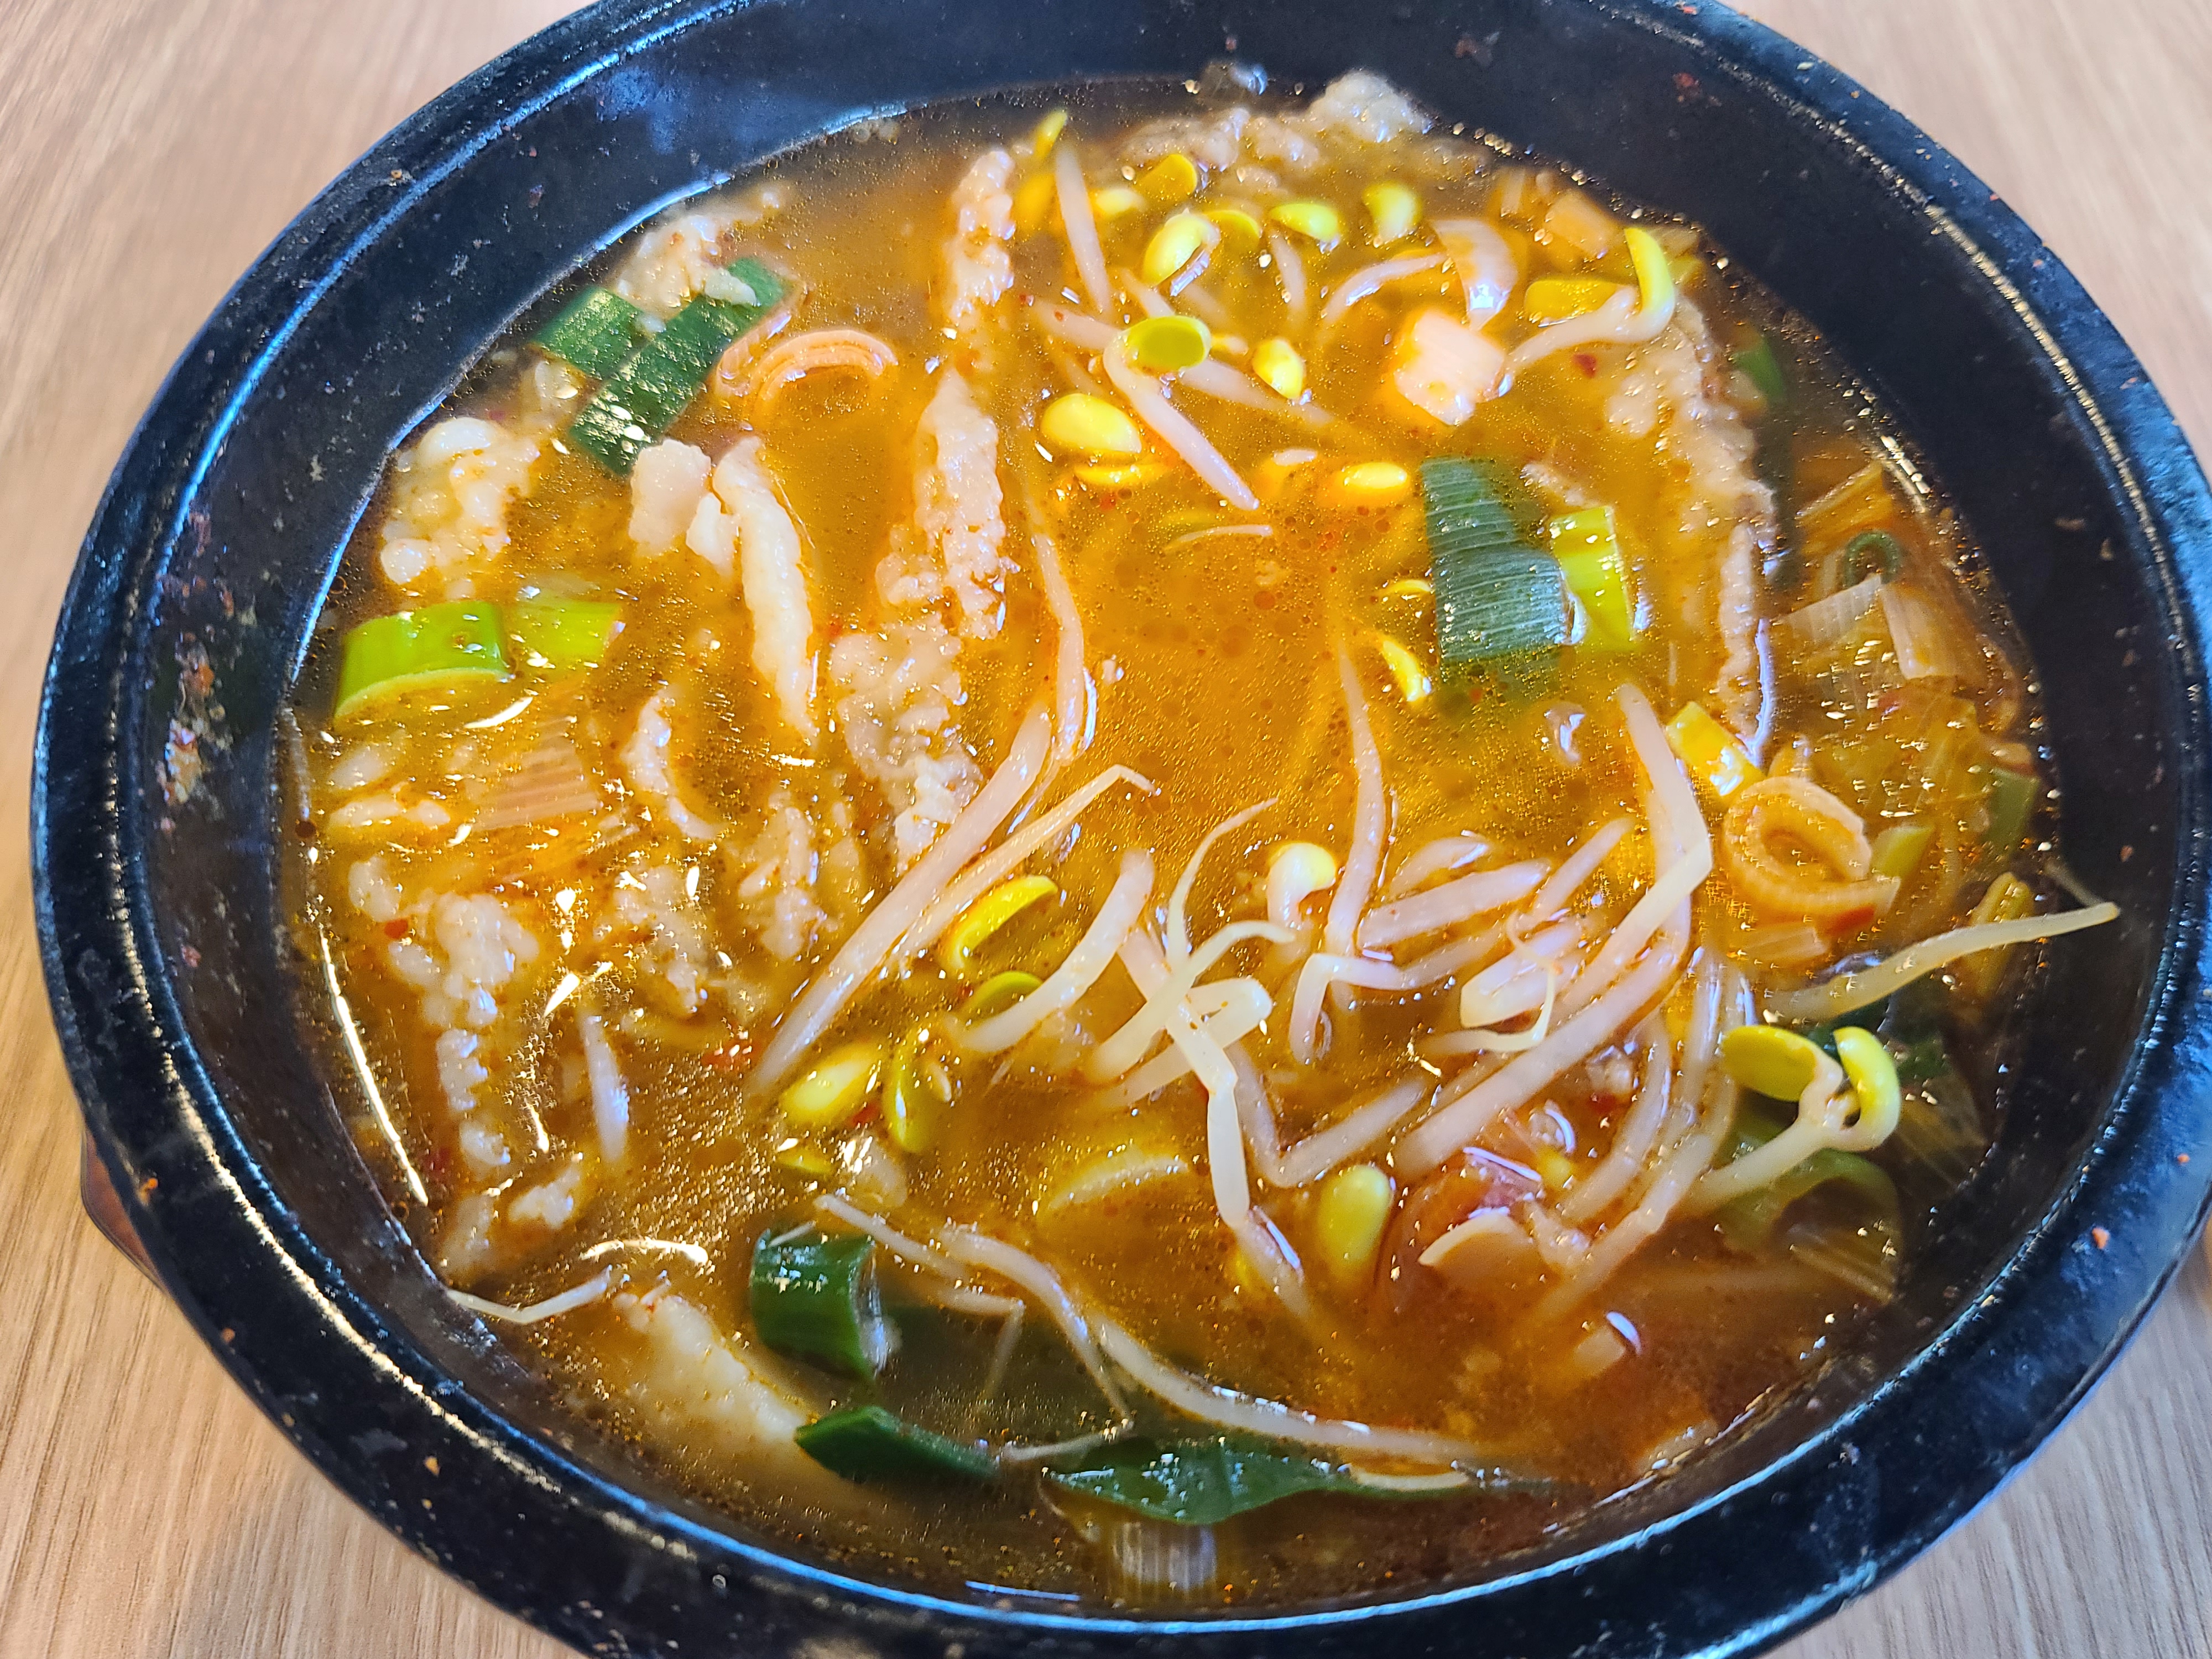 대표 메뉴인 수구레 국밥 사진